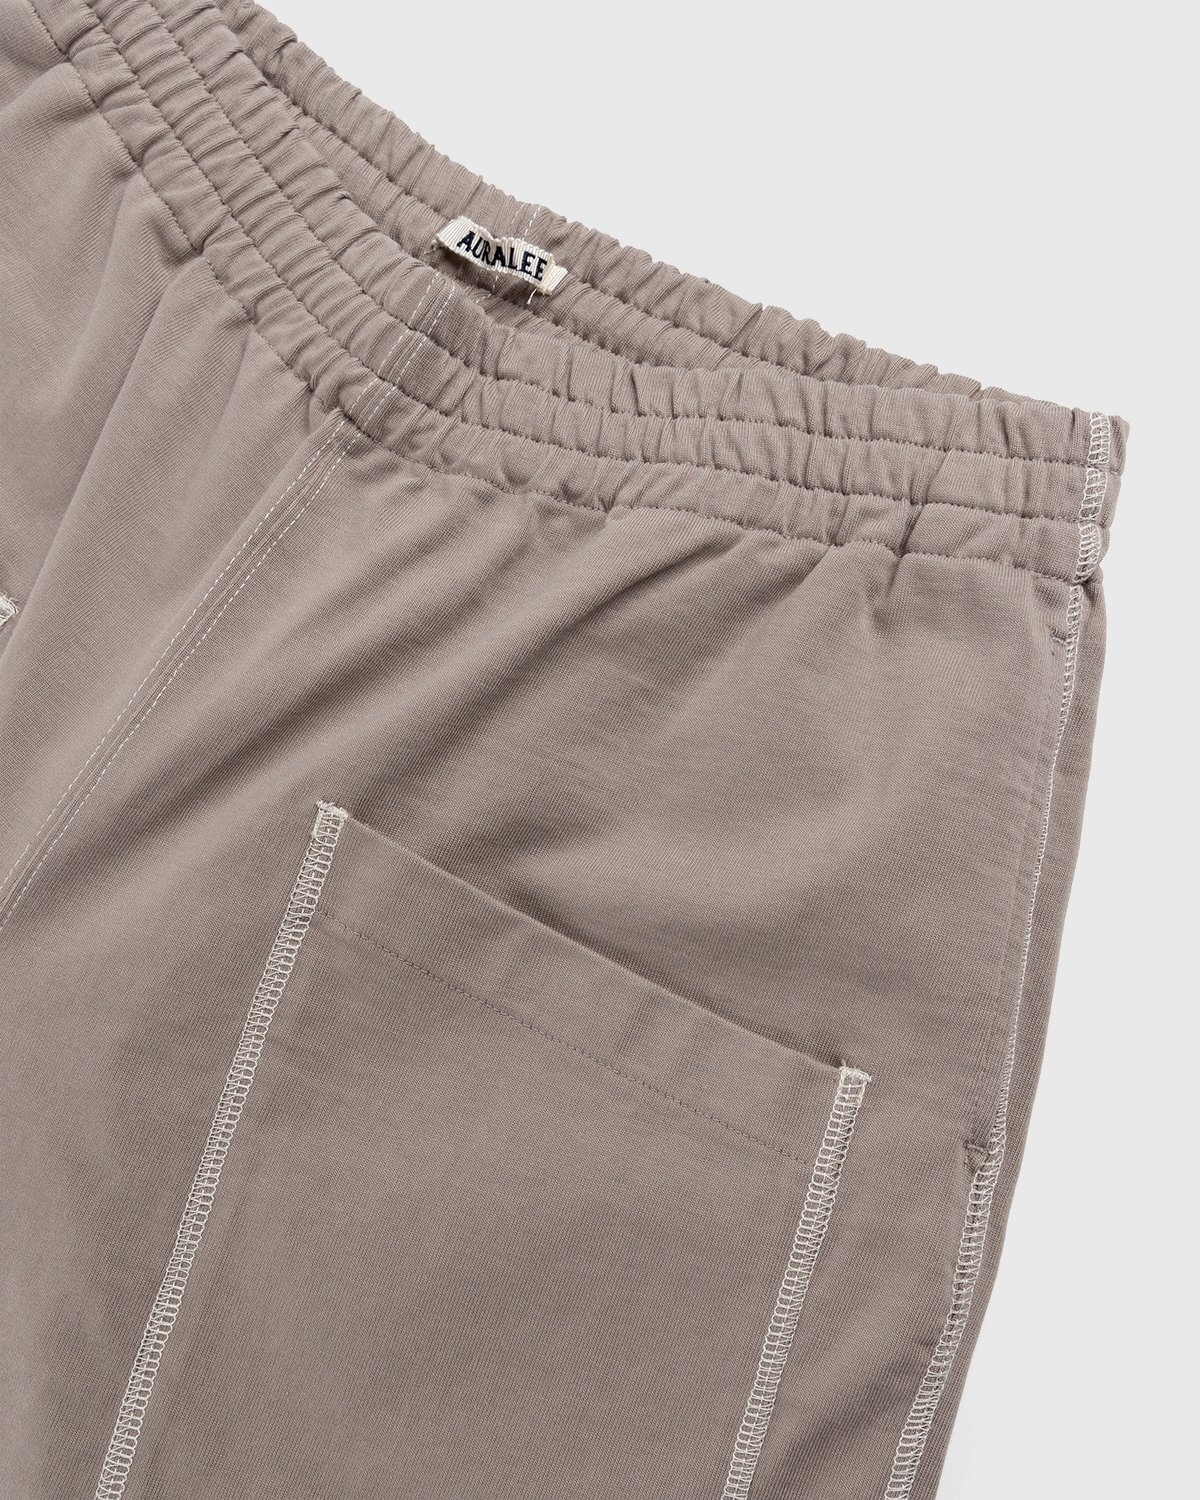 Auralee – High Density Cotton Jersey Shorts Grey Beige - Shorts - Beige - Image 3